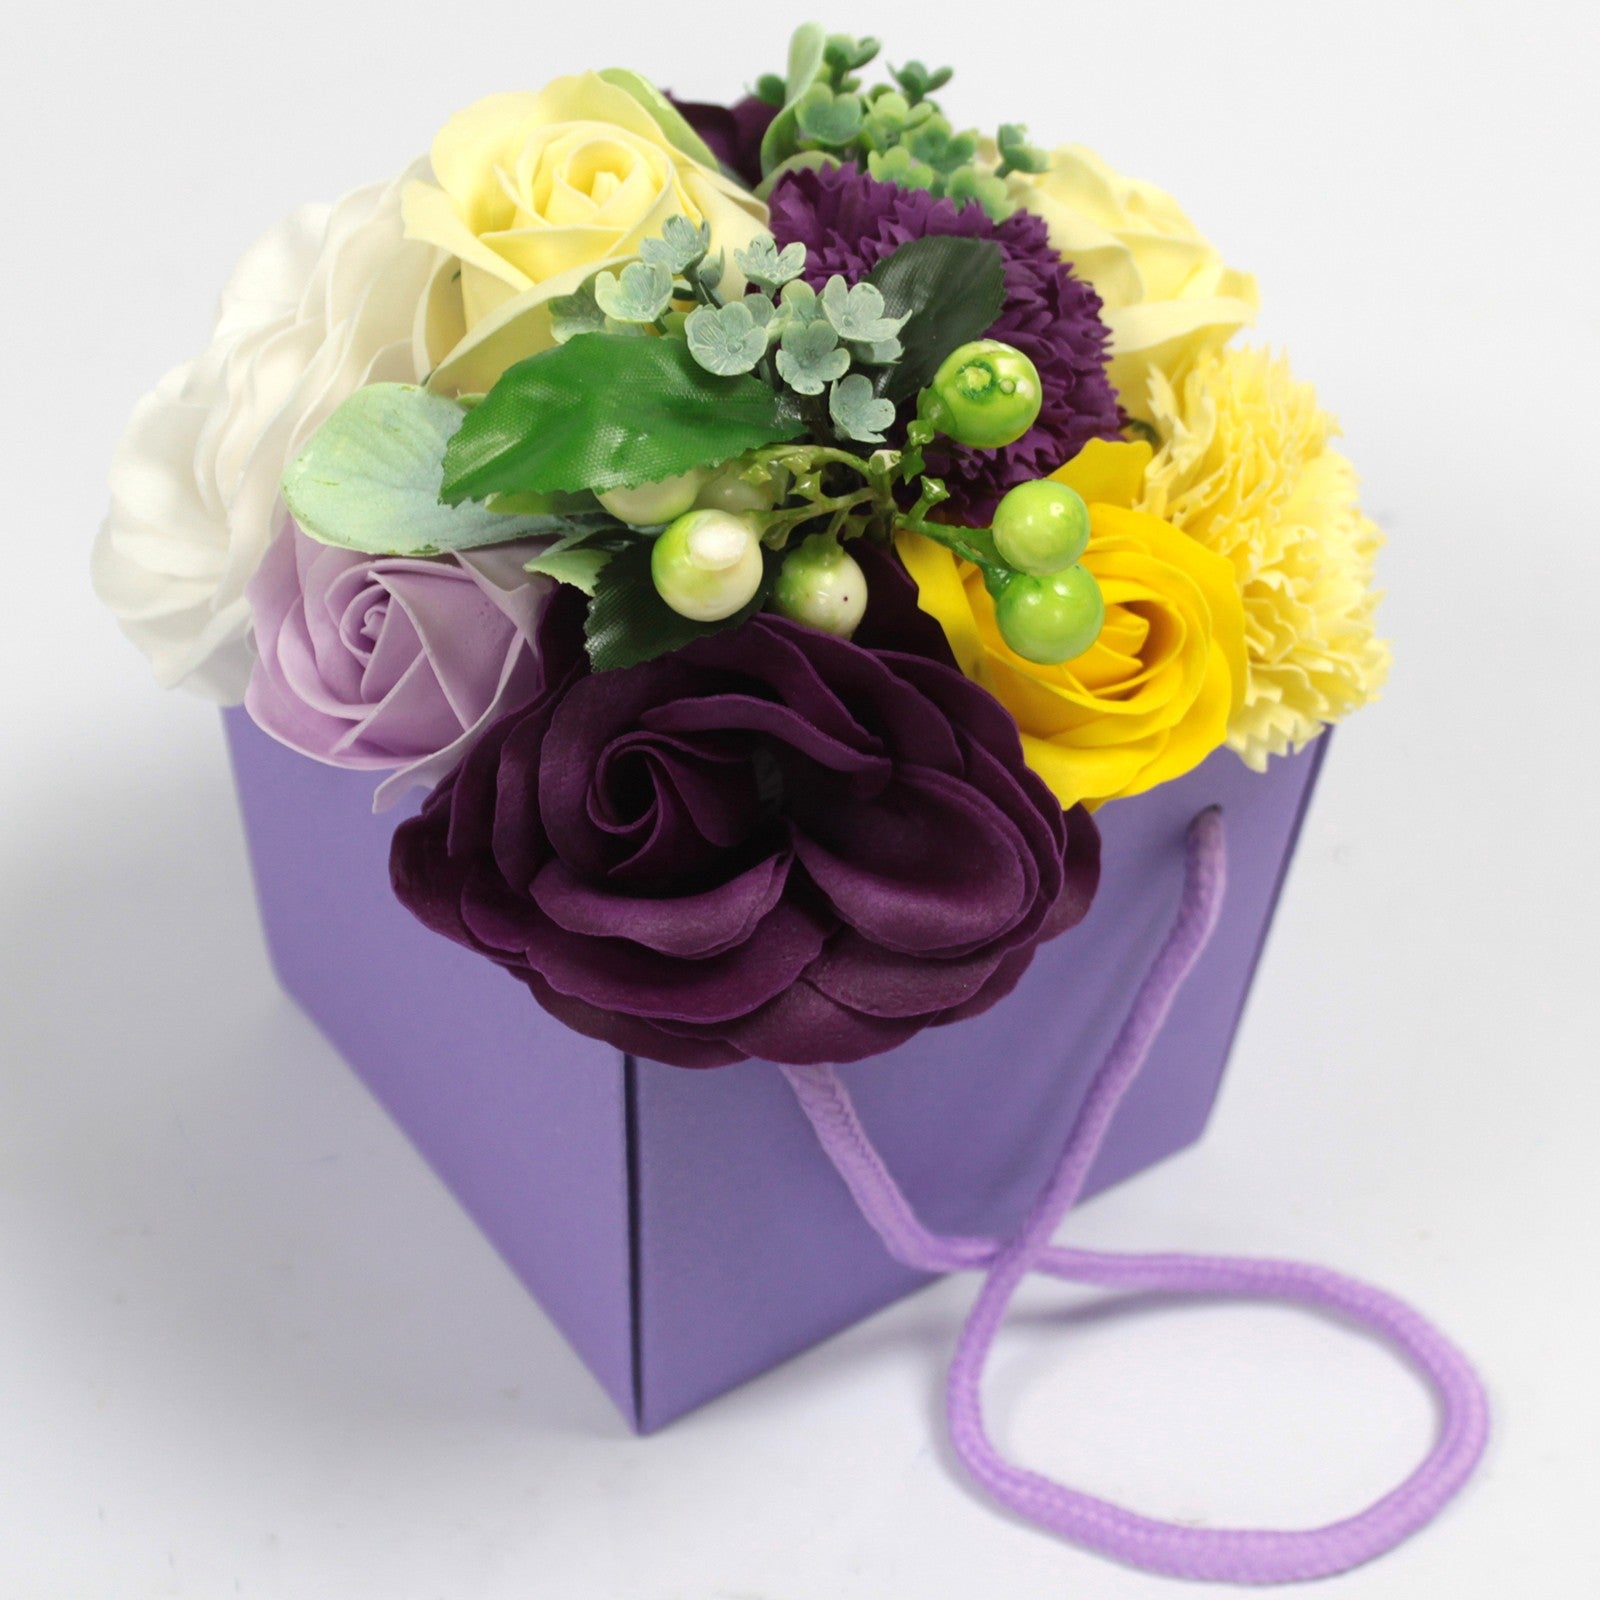 Soap Flower Bouquet - Purple Flower Garden Gift Bag - Ultrabee